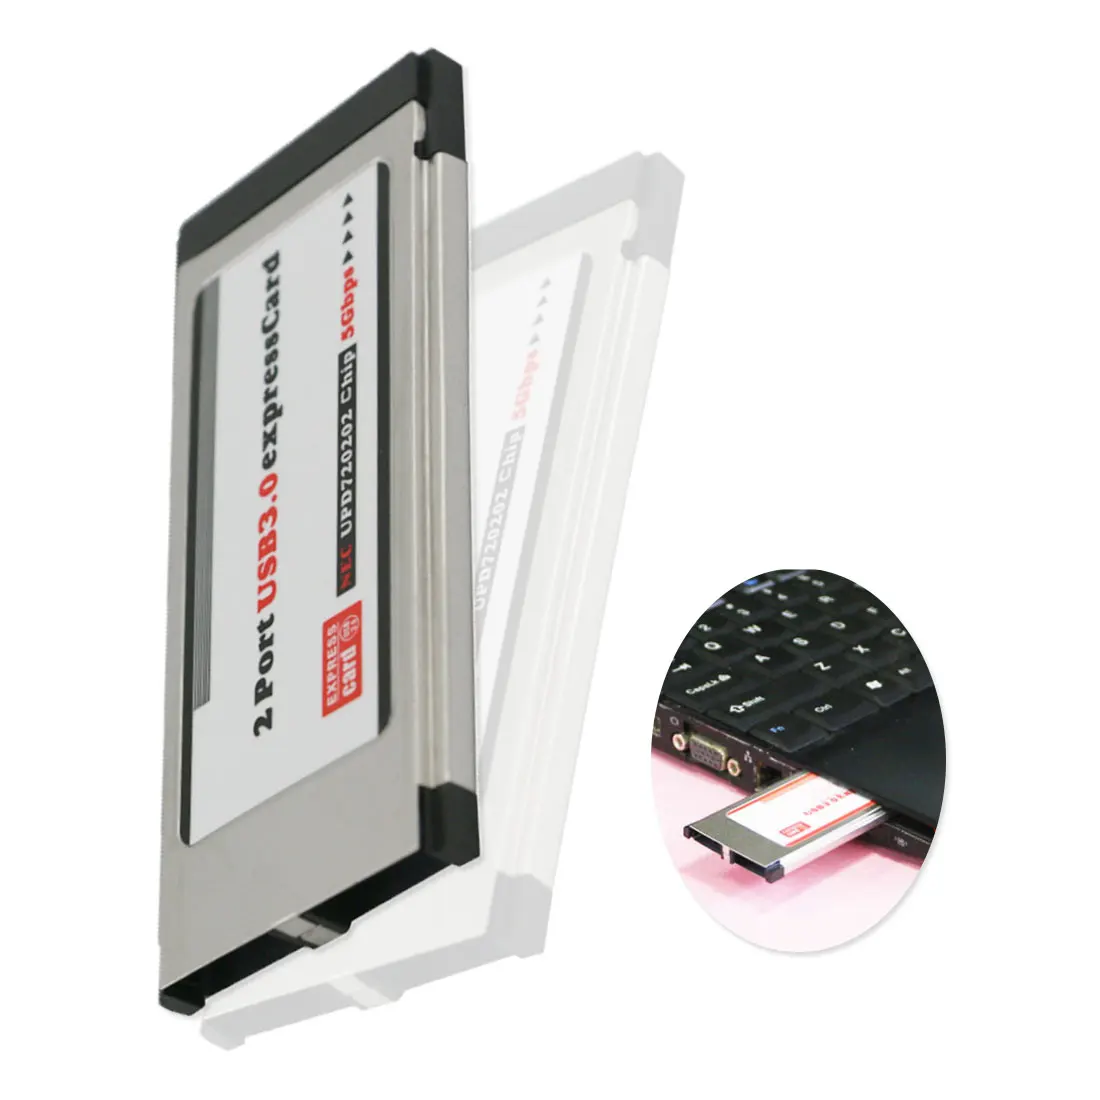 34 мм второго поколения 3,0 карта расширения жесткого диска для ноутбука высокая скорость 2 порта USB 3,0 адаптер карты